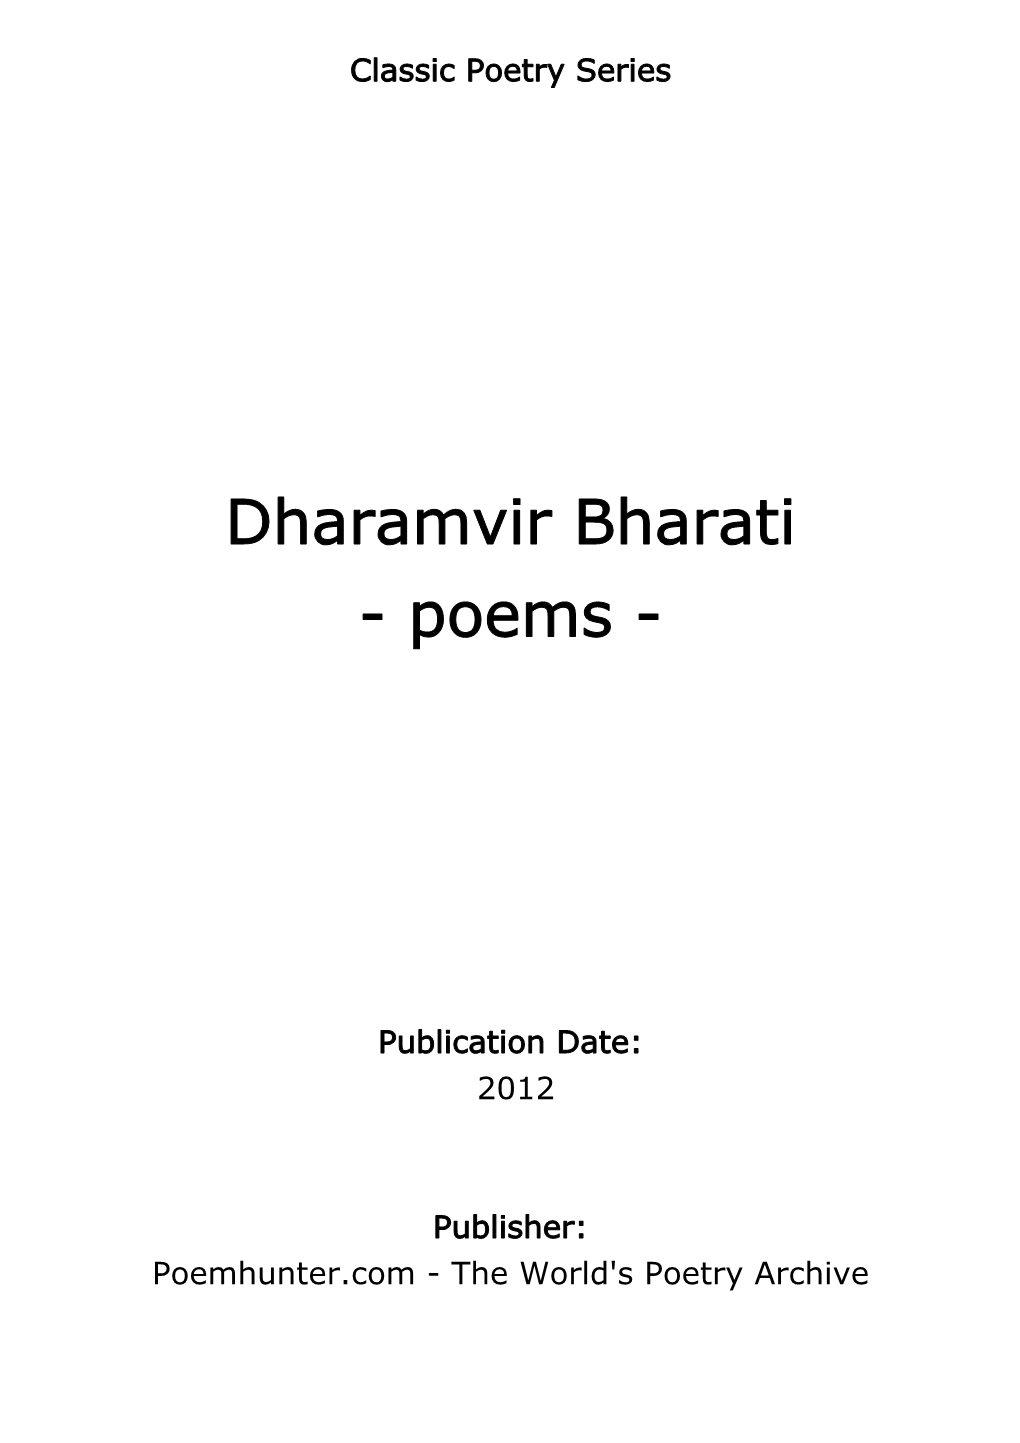 Dharamvir Bharati - Poems